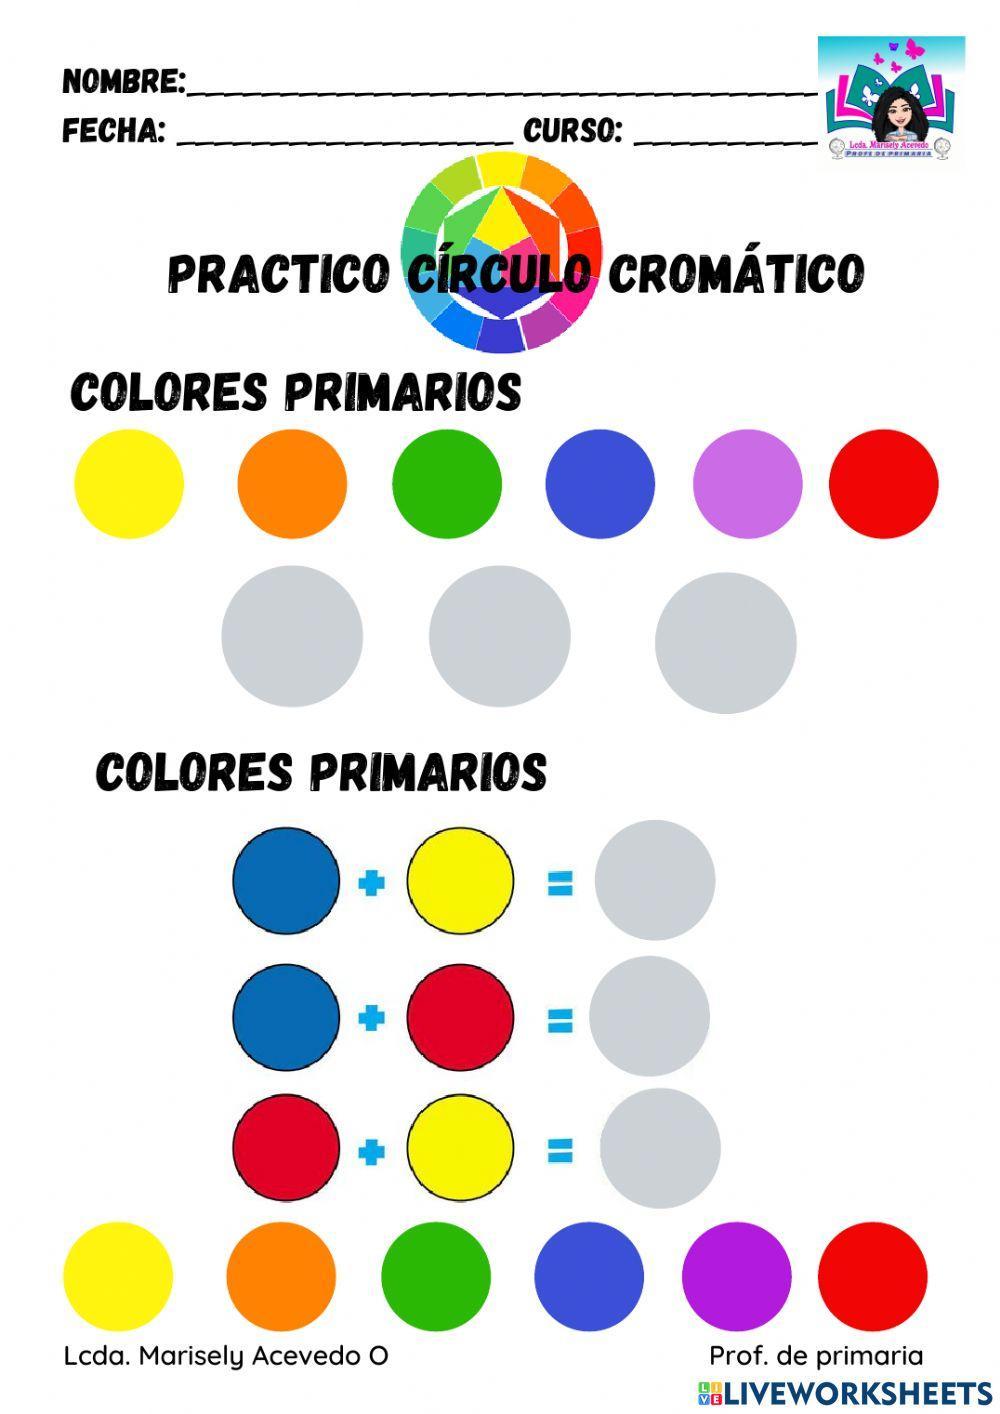 El circulo cromatico